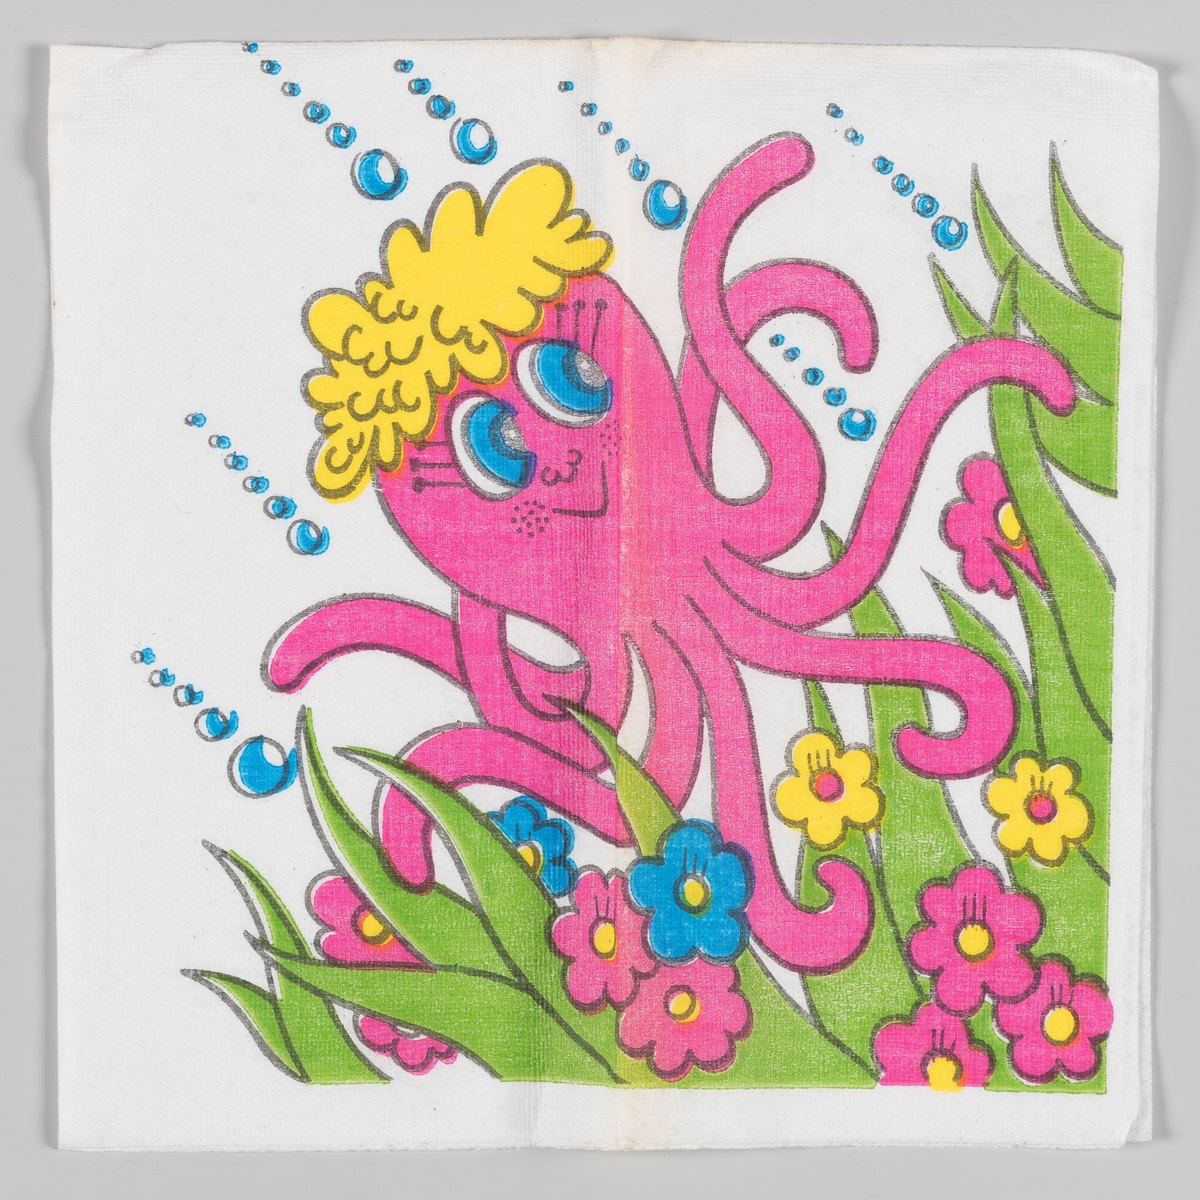 En rosa blekksprut med gult hår beveger seg runt blant gress og blomster.